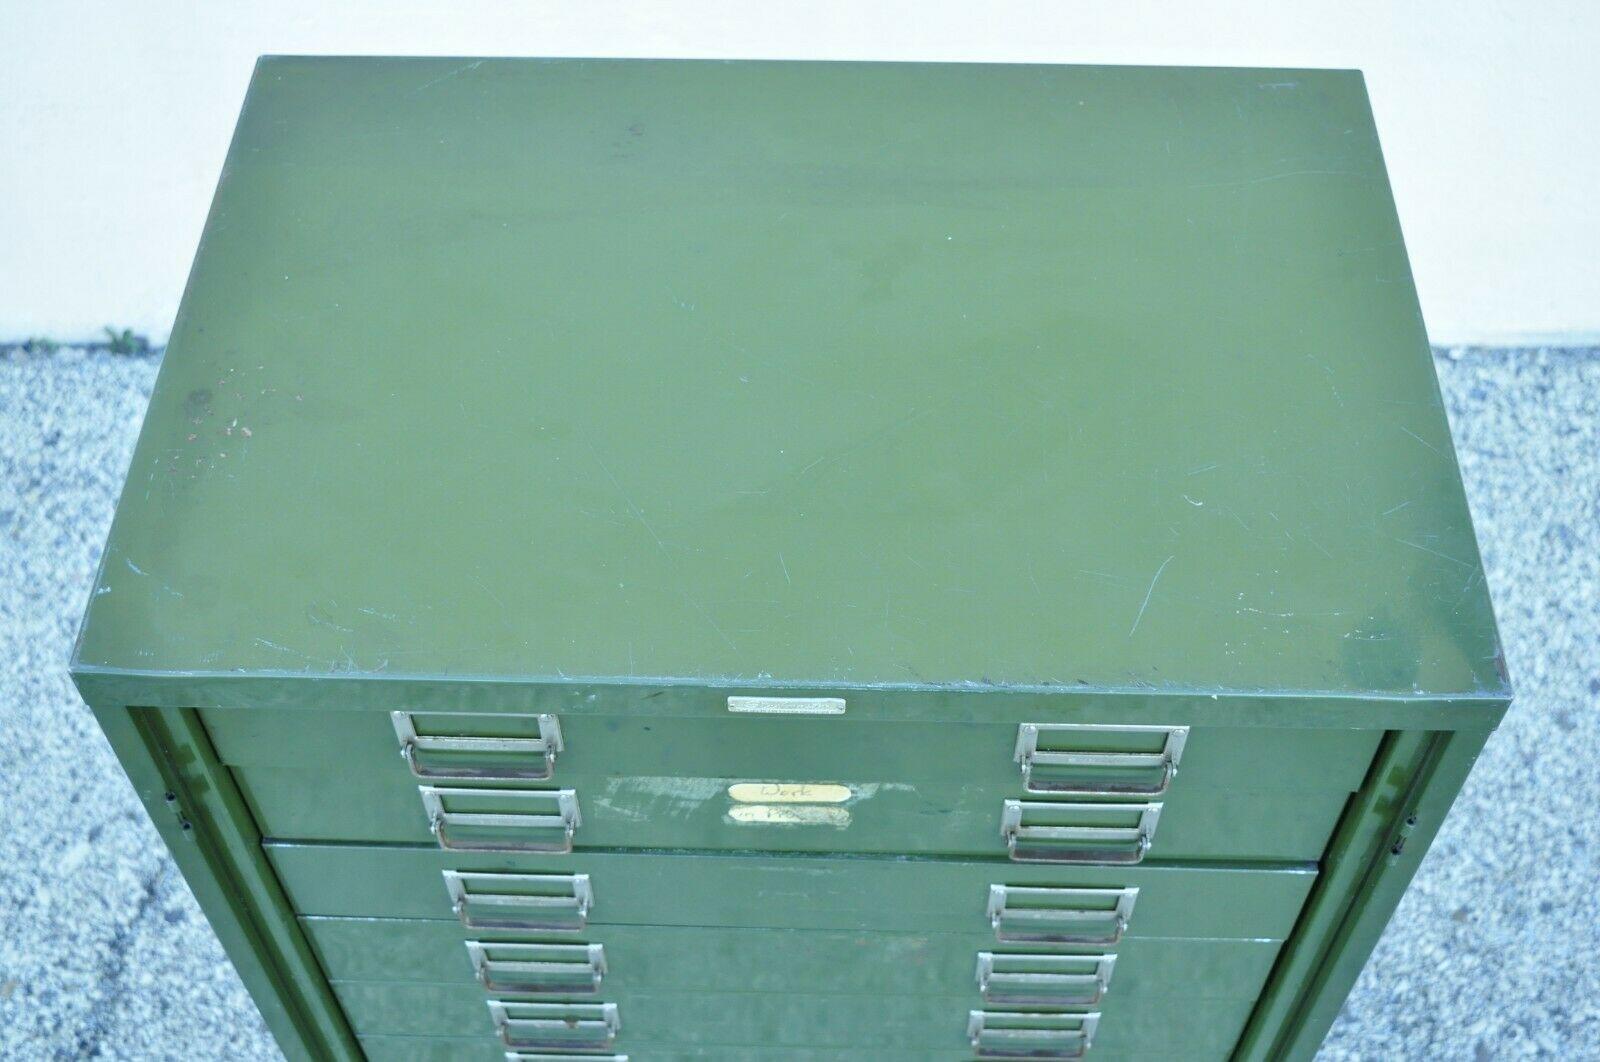 steelmaster file cabinet vintage